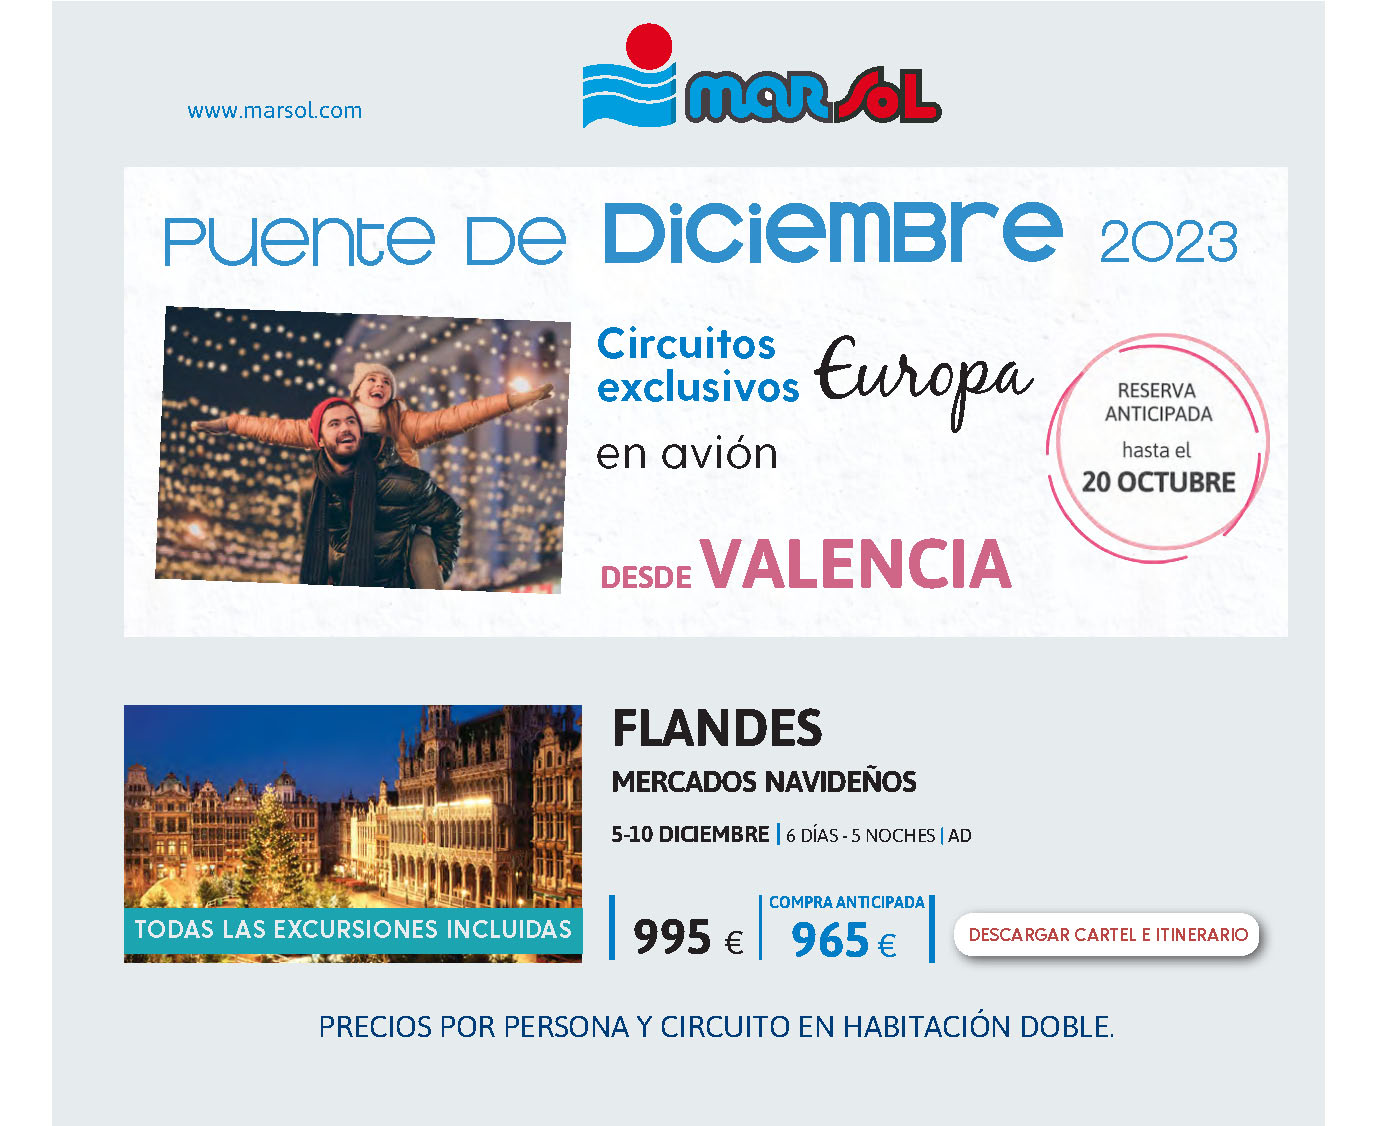 Ofertas Marsol Puente de Diciembre 2023 circuito Flandes 6 dias salida 5 diciembre vuelo directo desde Valencia